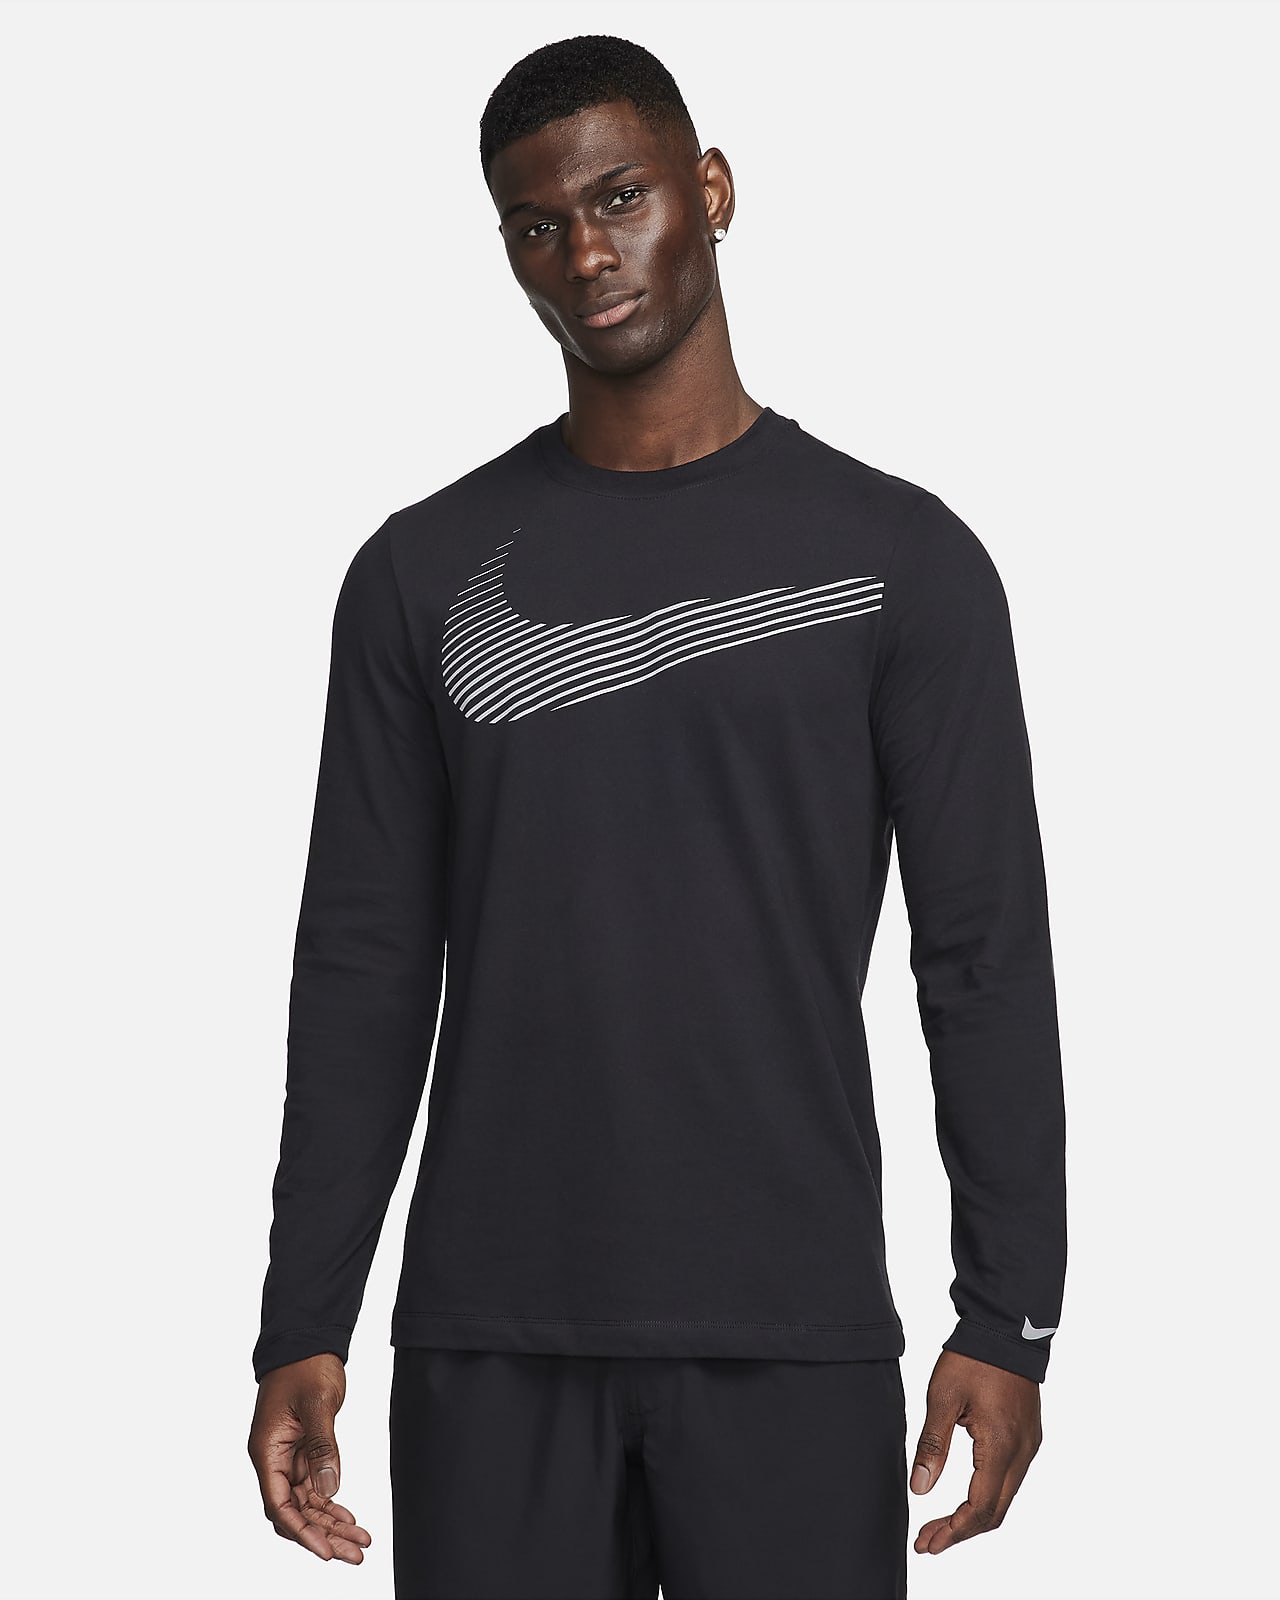 Nike Men's Dri-FIT Long-Sleeve Fitness T-Shirt